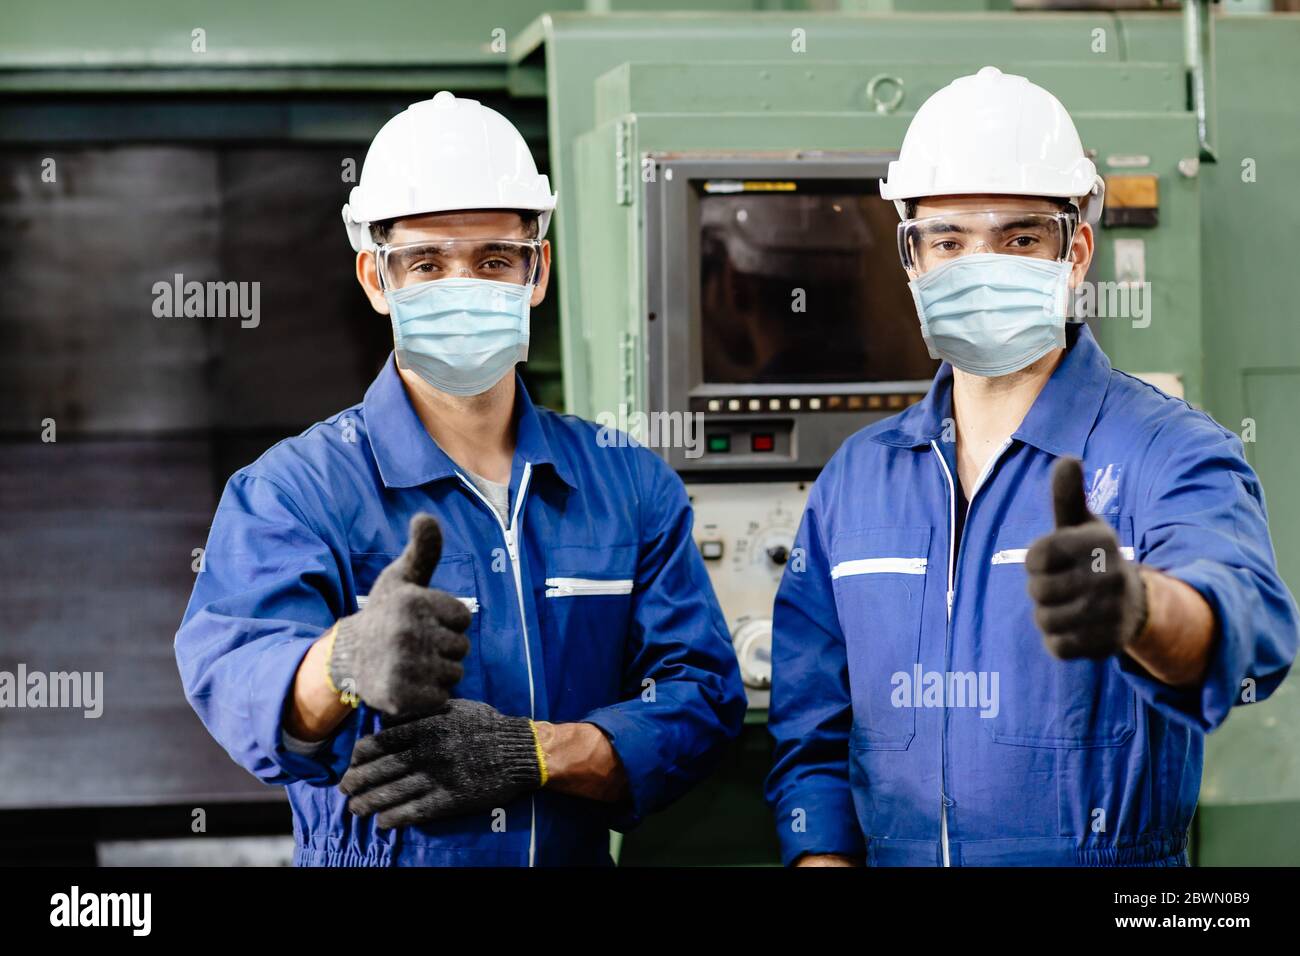 Arbeiter tragen Gesichtsschutz oder Einweg-Gesichtsmaske während der Arbeit Service in der Fabrik Coronavirus (Covid-19) oder Luftverschmutzung Verschmutzung in der Fabrik zu verhindern Stockfoto